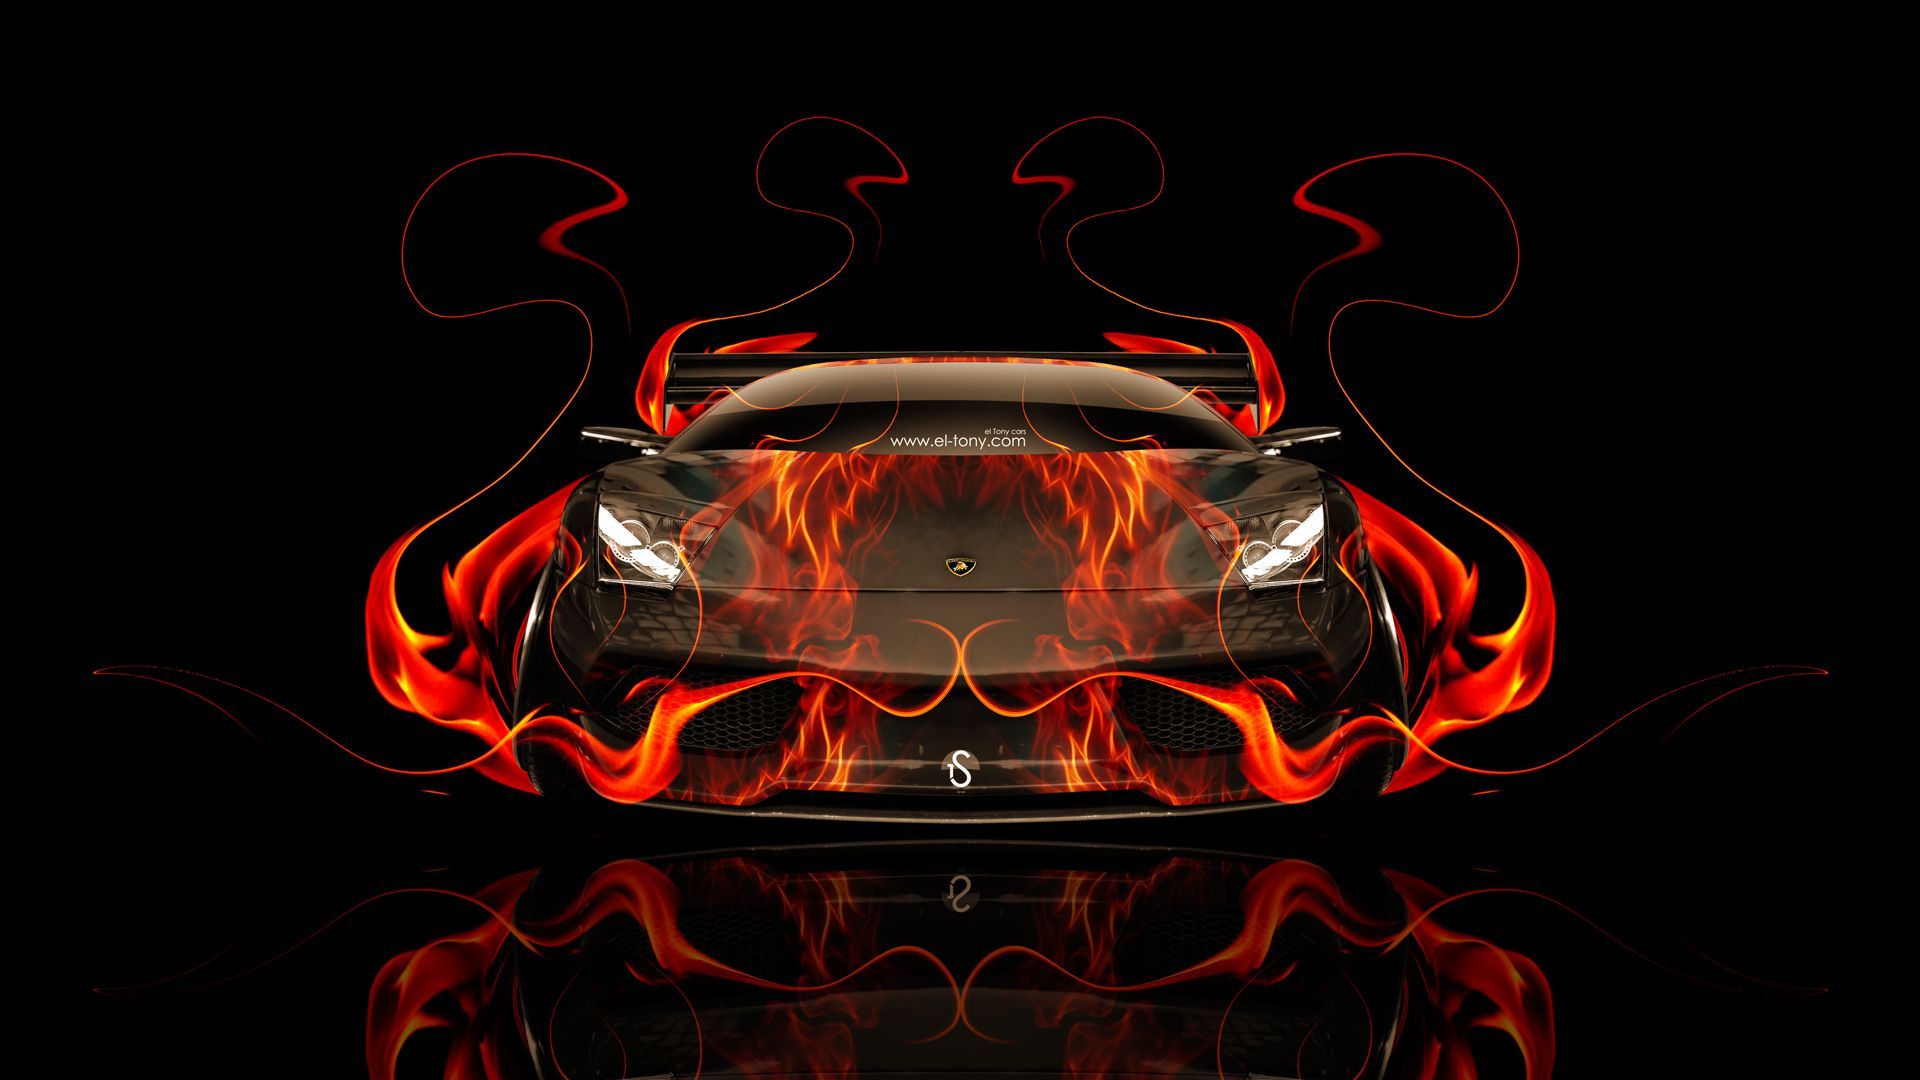 Fire Bugatti Wallpapers - Wallpaper Cave